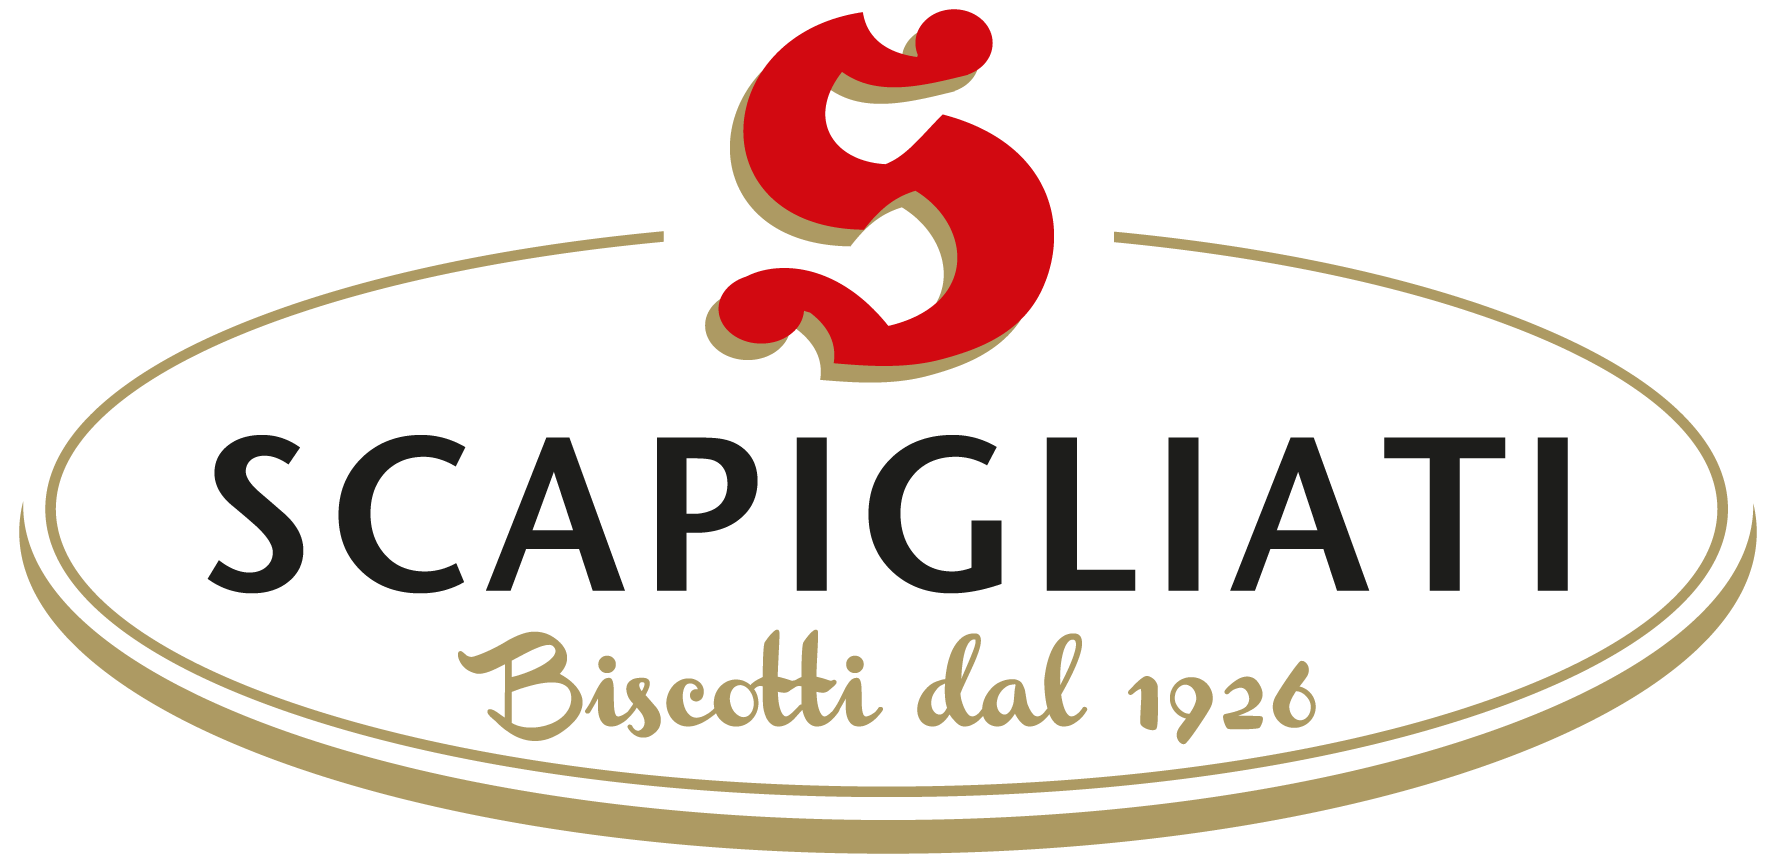 SCAPIGLIATI - Biscotti dal 1926